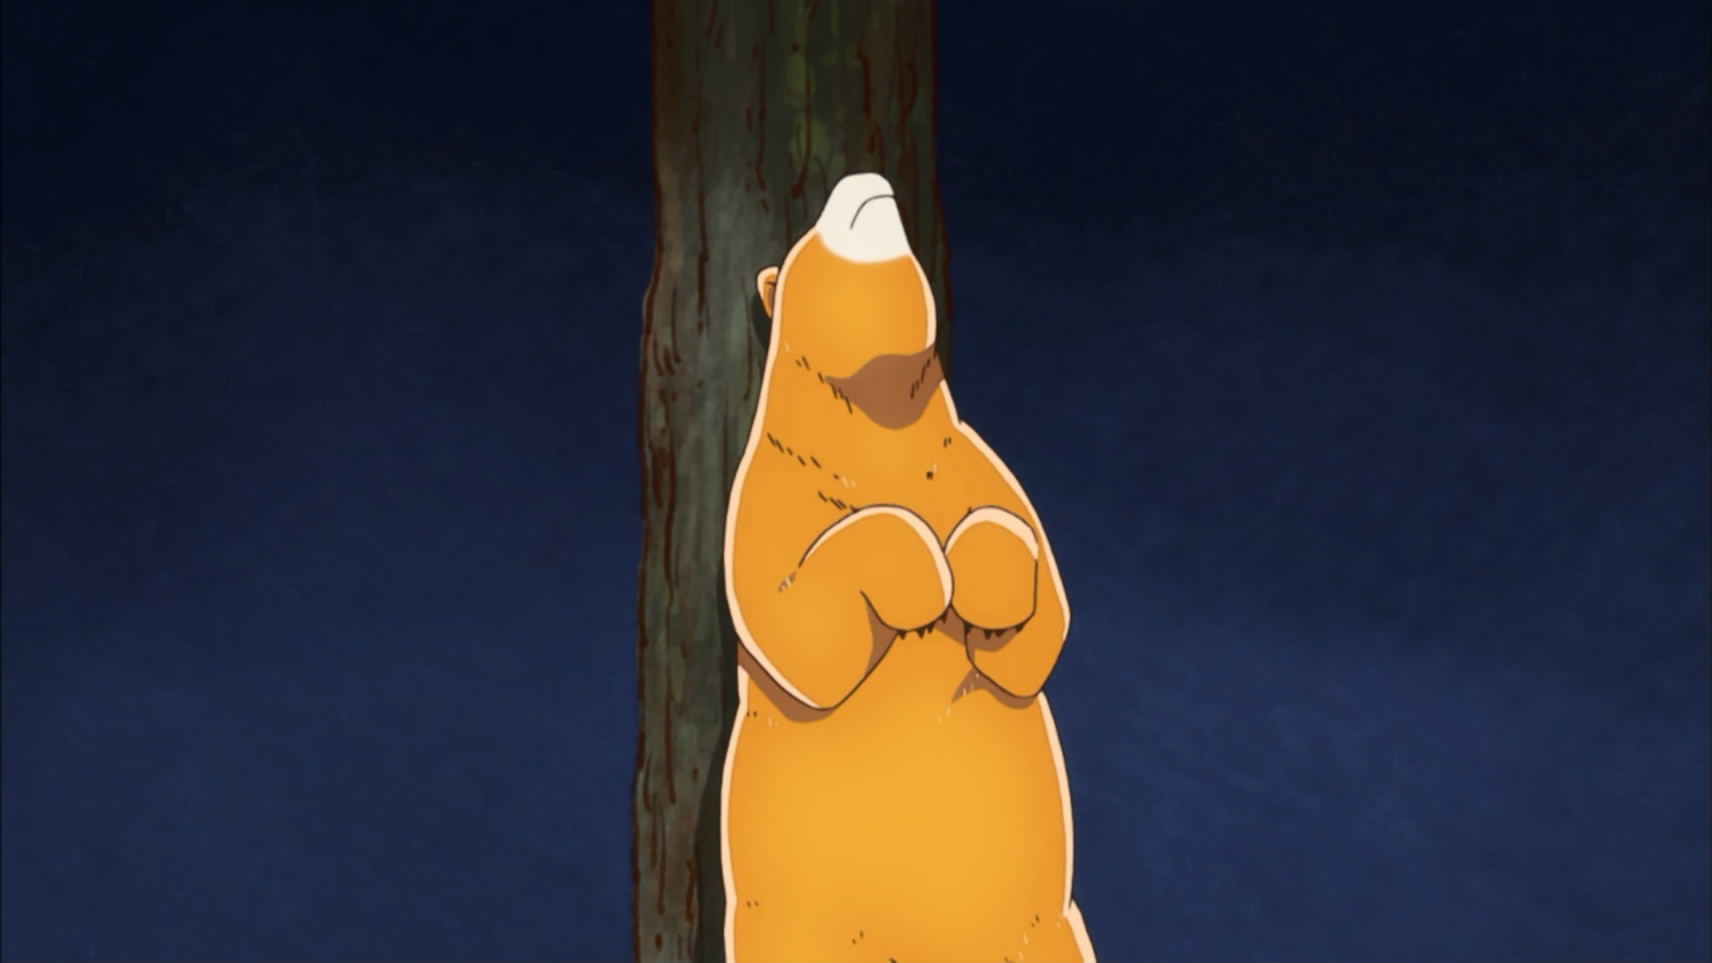 2016四月新番 当女孩遇到熊 原版名称 くまみこ 熊